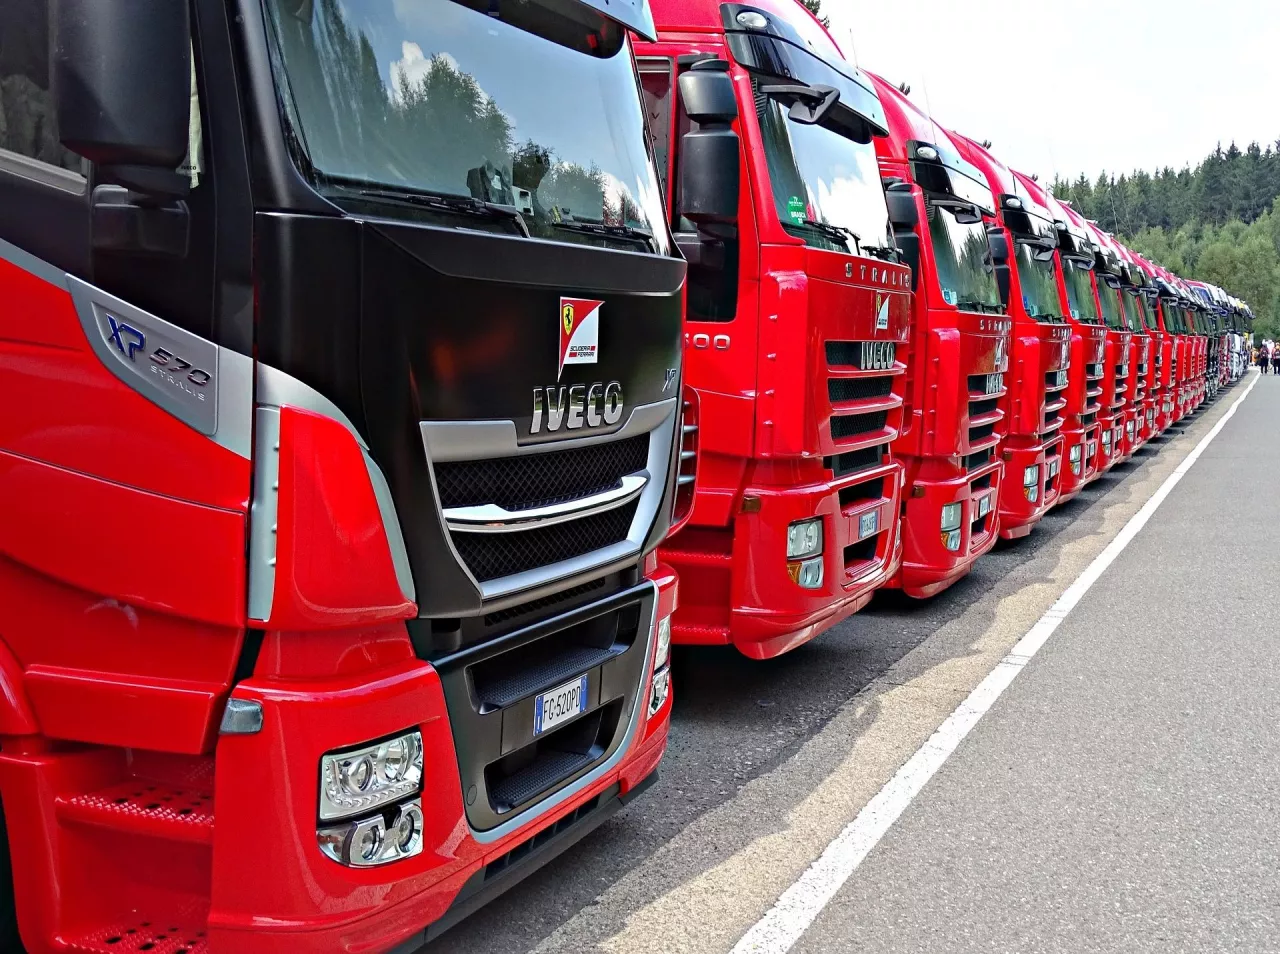 Czerwone ciężarówki, dostawca, logistyka